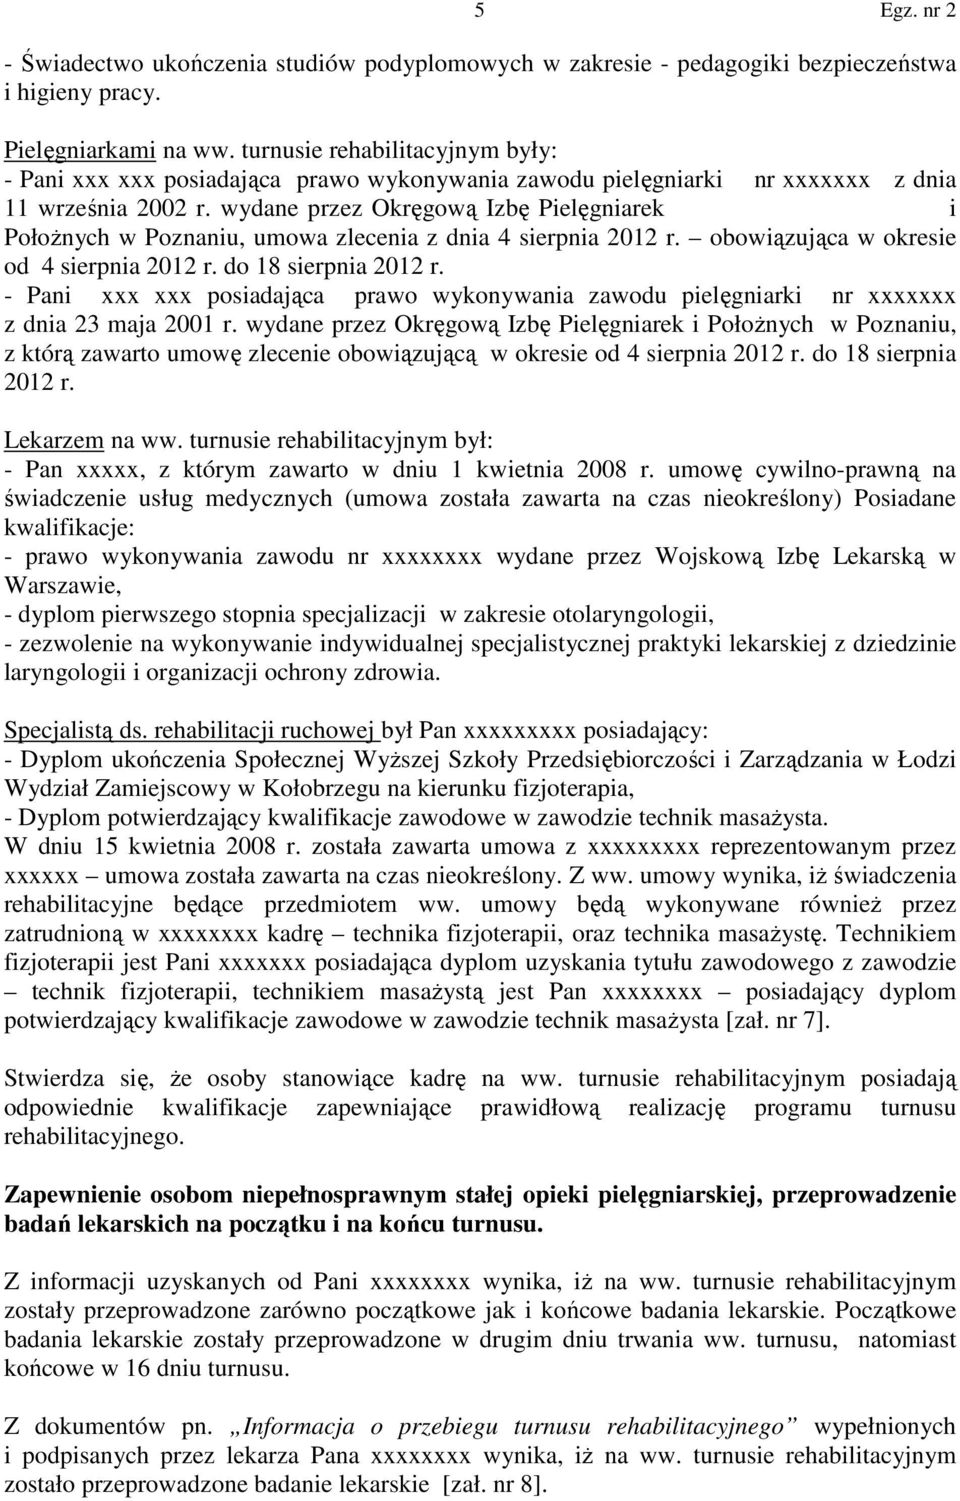 wydane przez Okręgową Izbę Pielęgniarek i Położnych w Poznaniu, umowa zlecenia z dnia 4 sierpnia 2012 r. obowiązująca w okresie od 4 sierpnia 2012 r. do 18 sierpnia 2012 r.